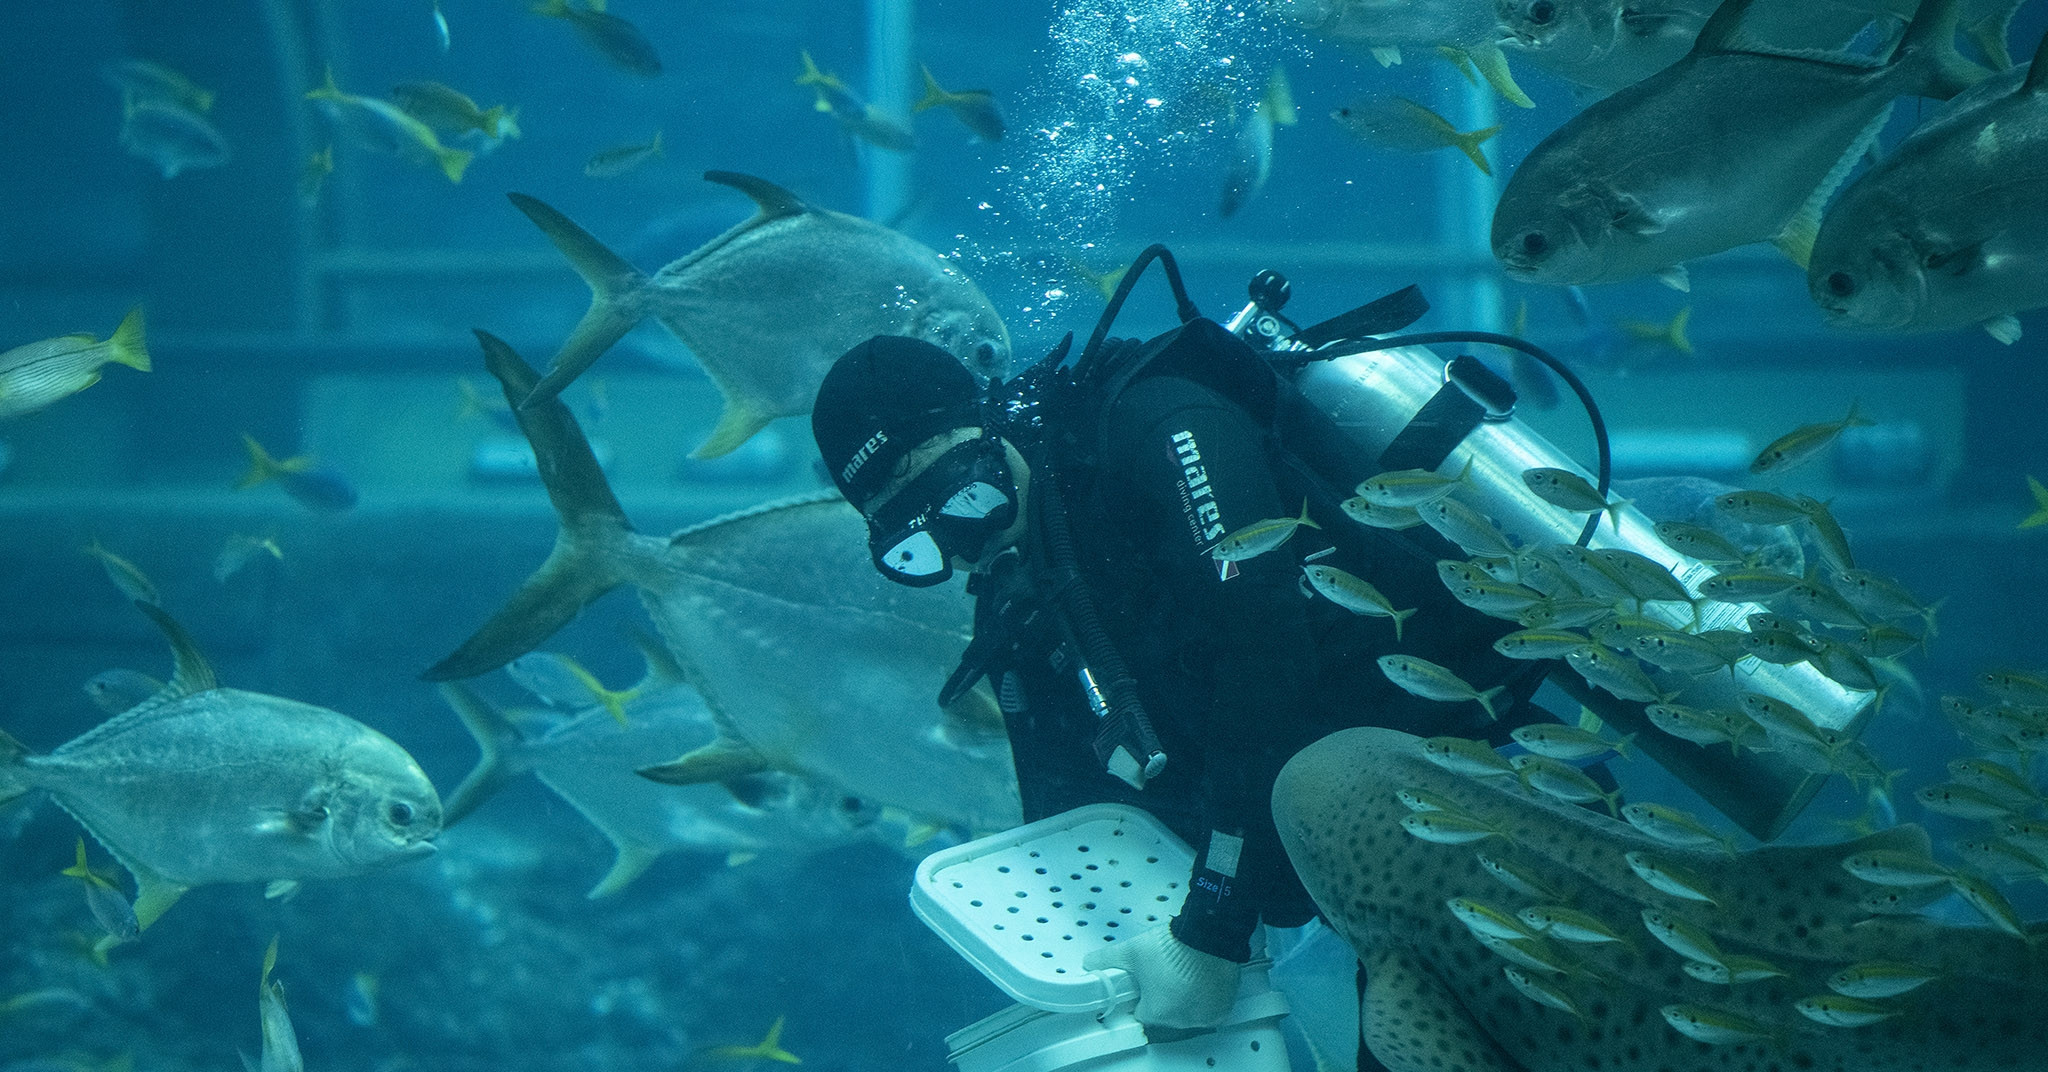 Phu Quoc Aquarium hosts 255,000 aquatic creatures